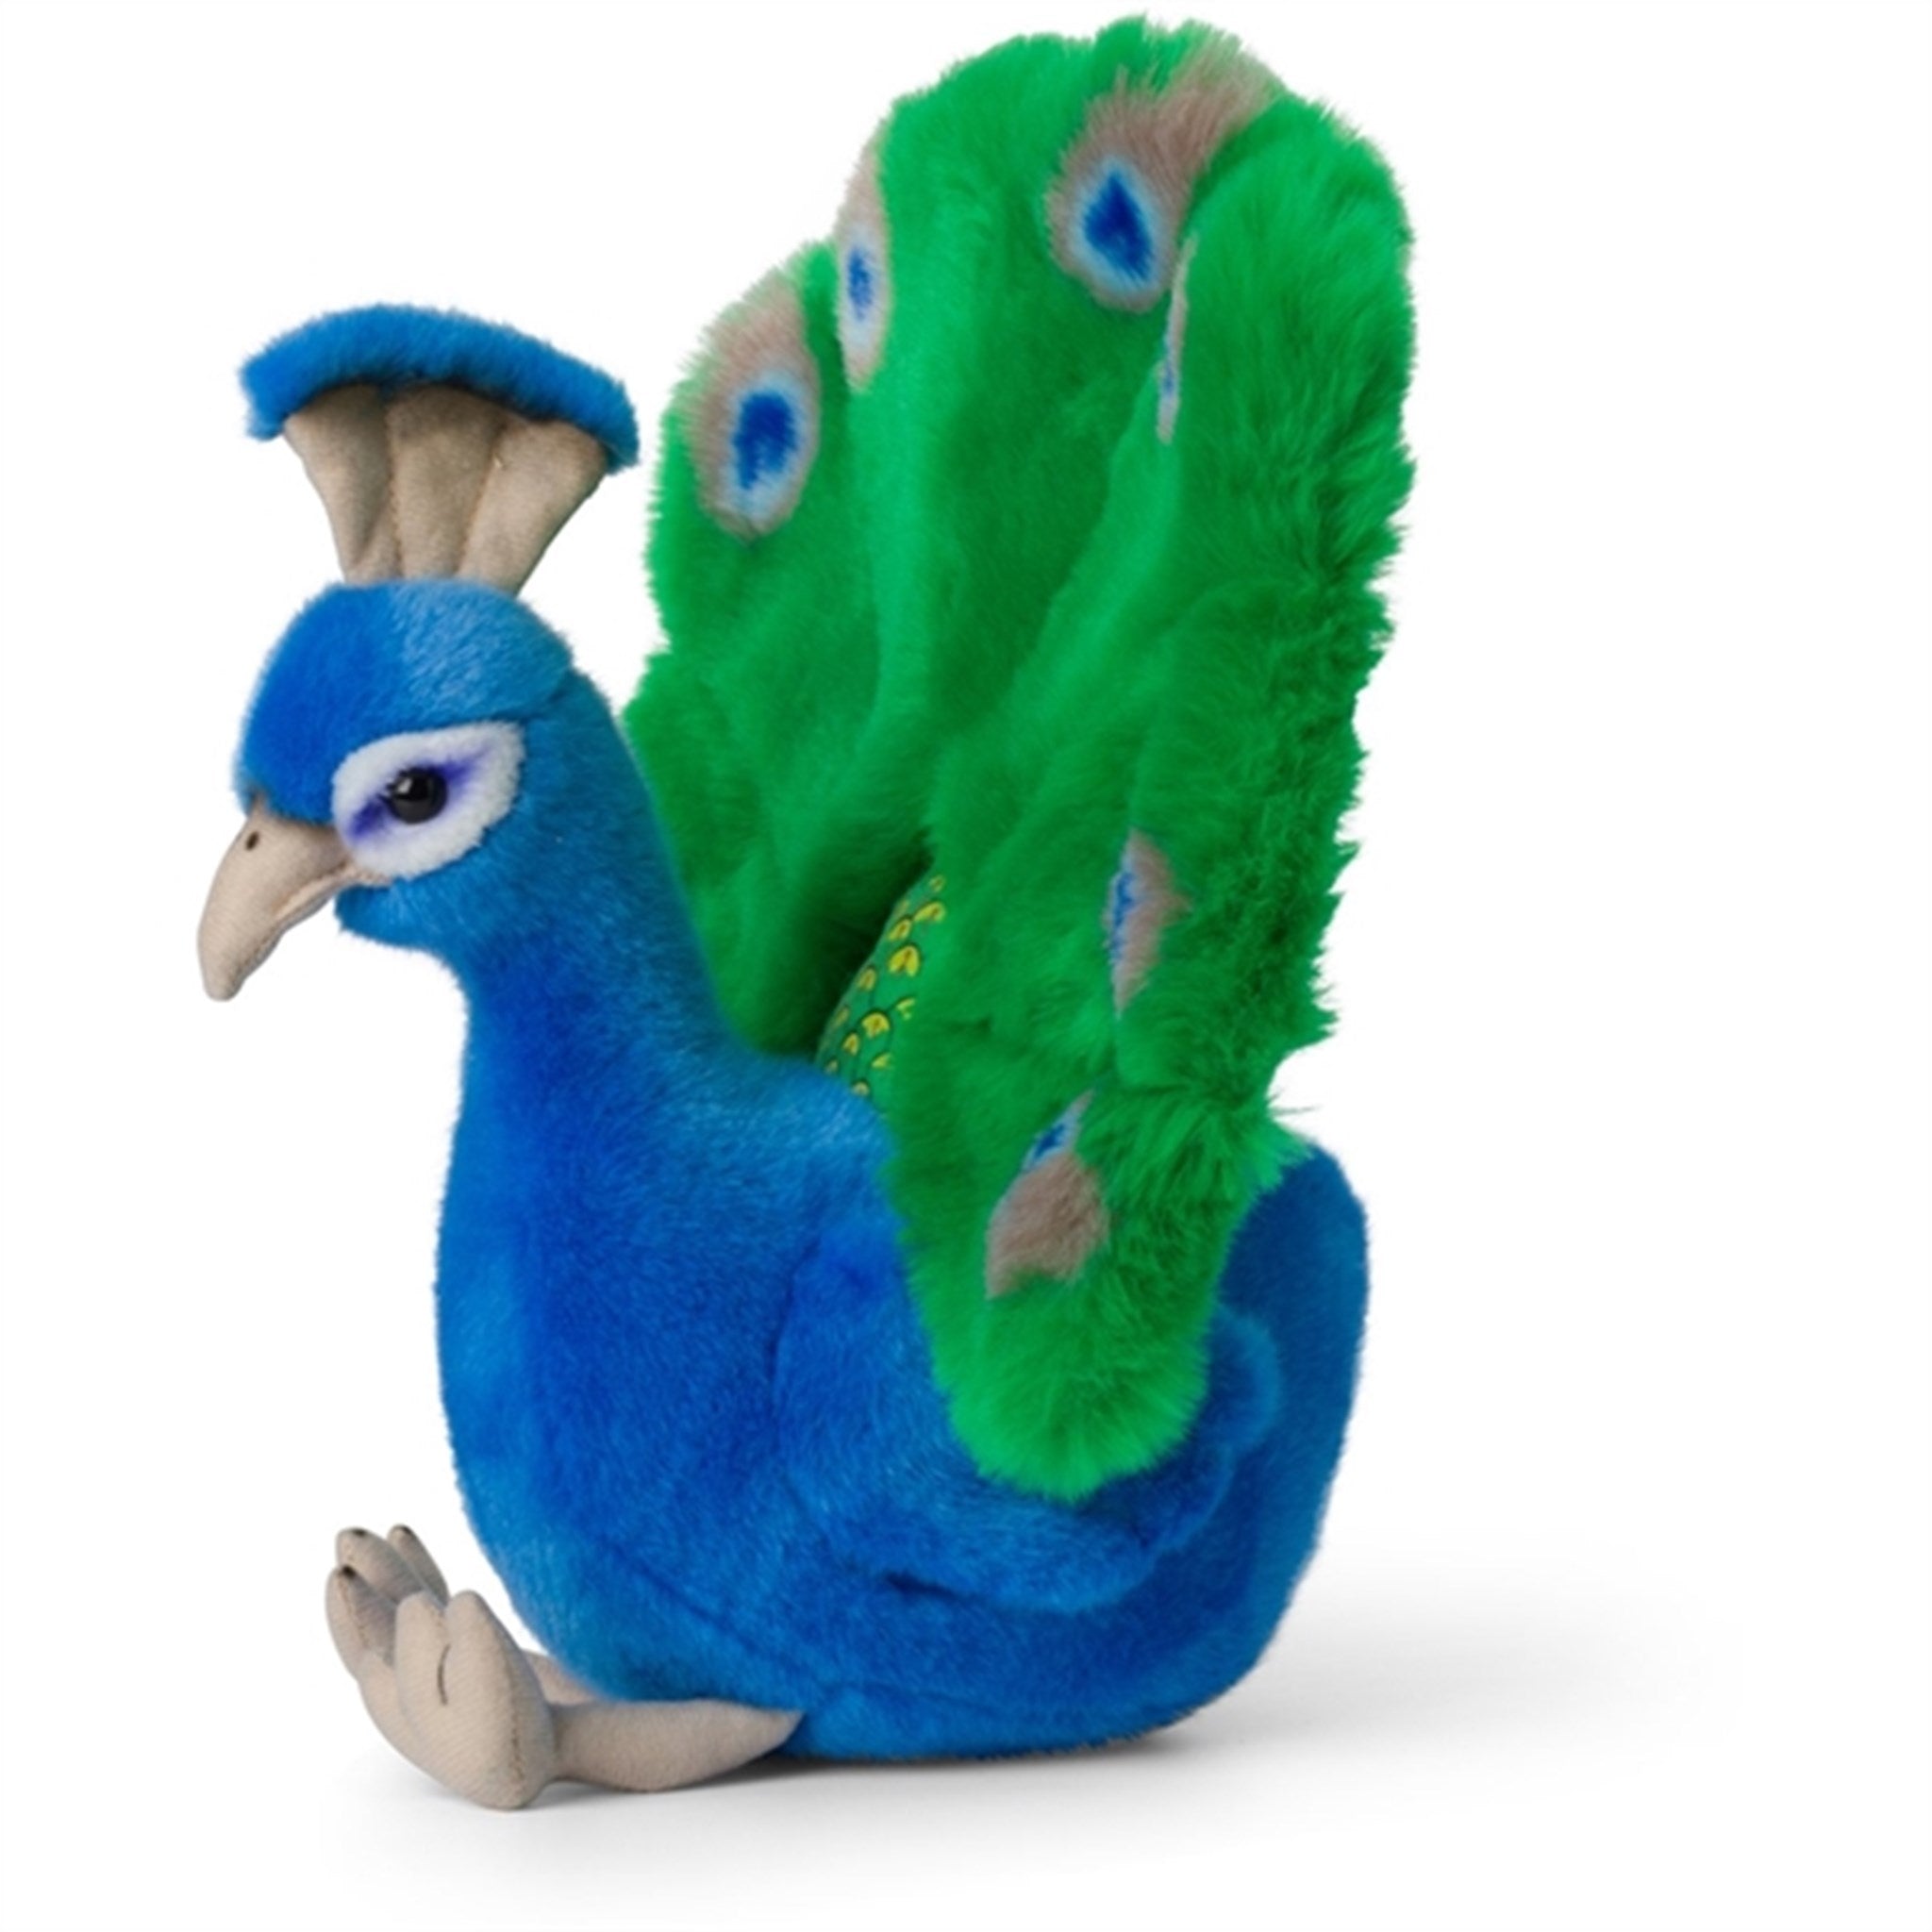 Bon Ton Toys WWF Plush Peacock 23 cm 2